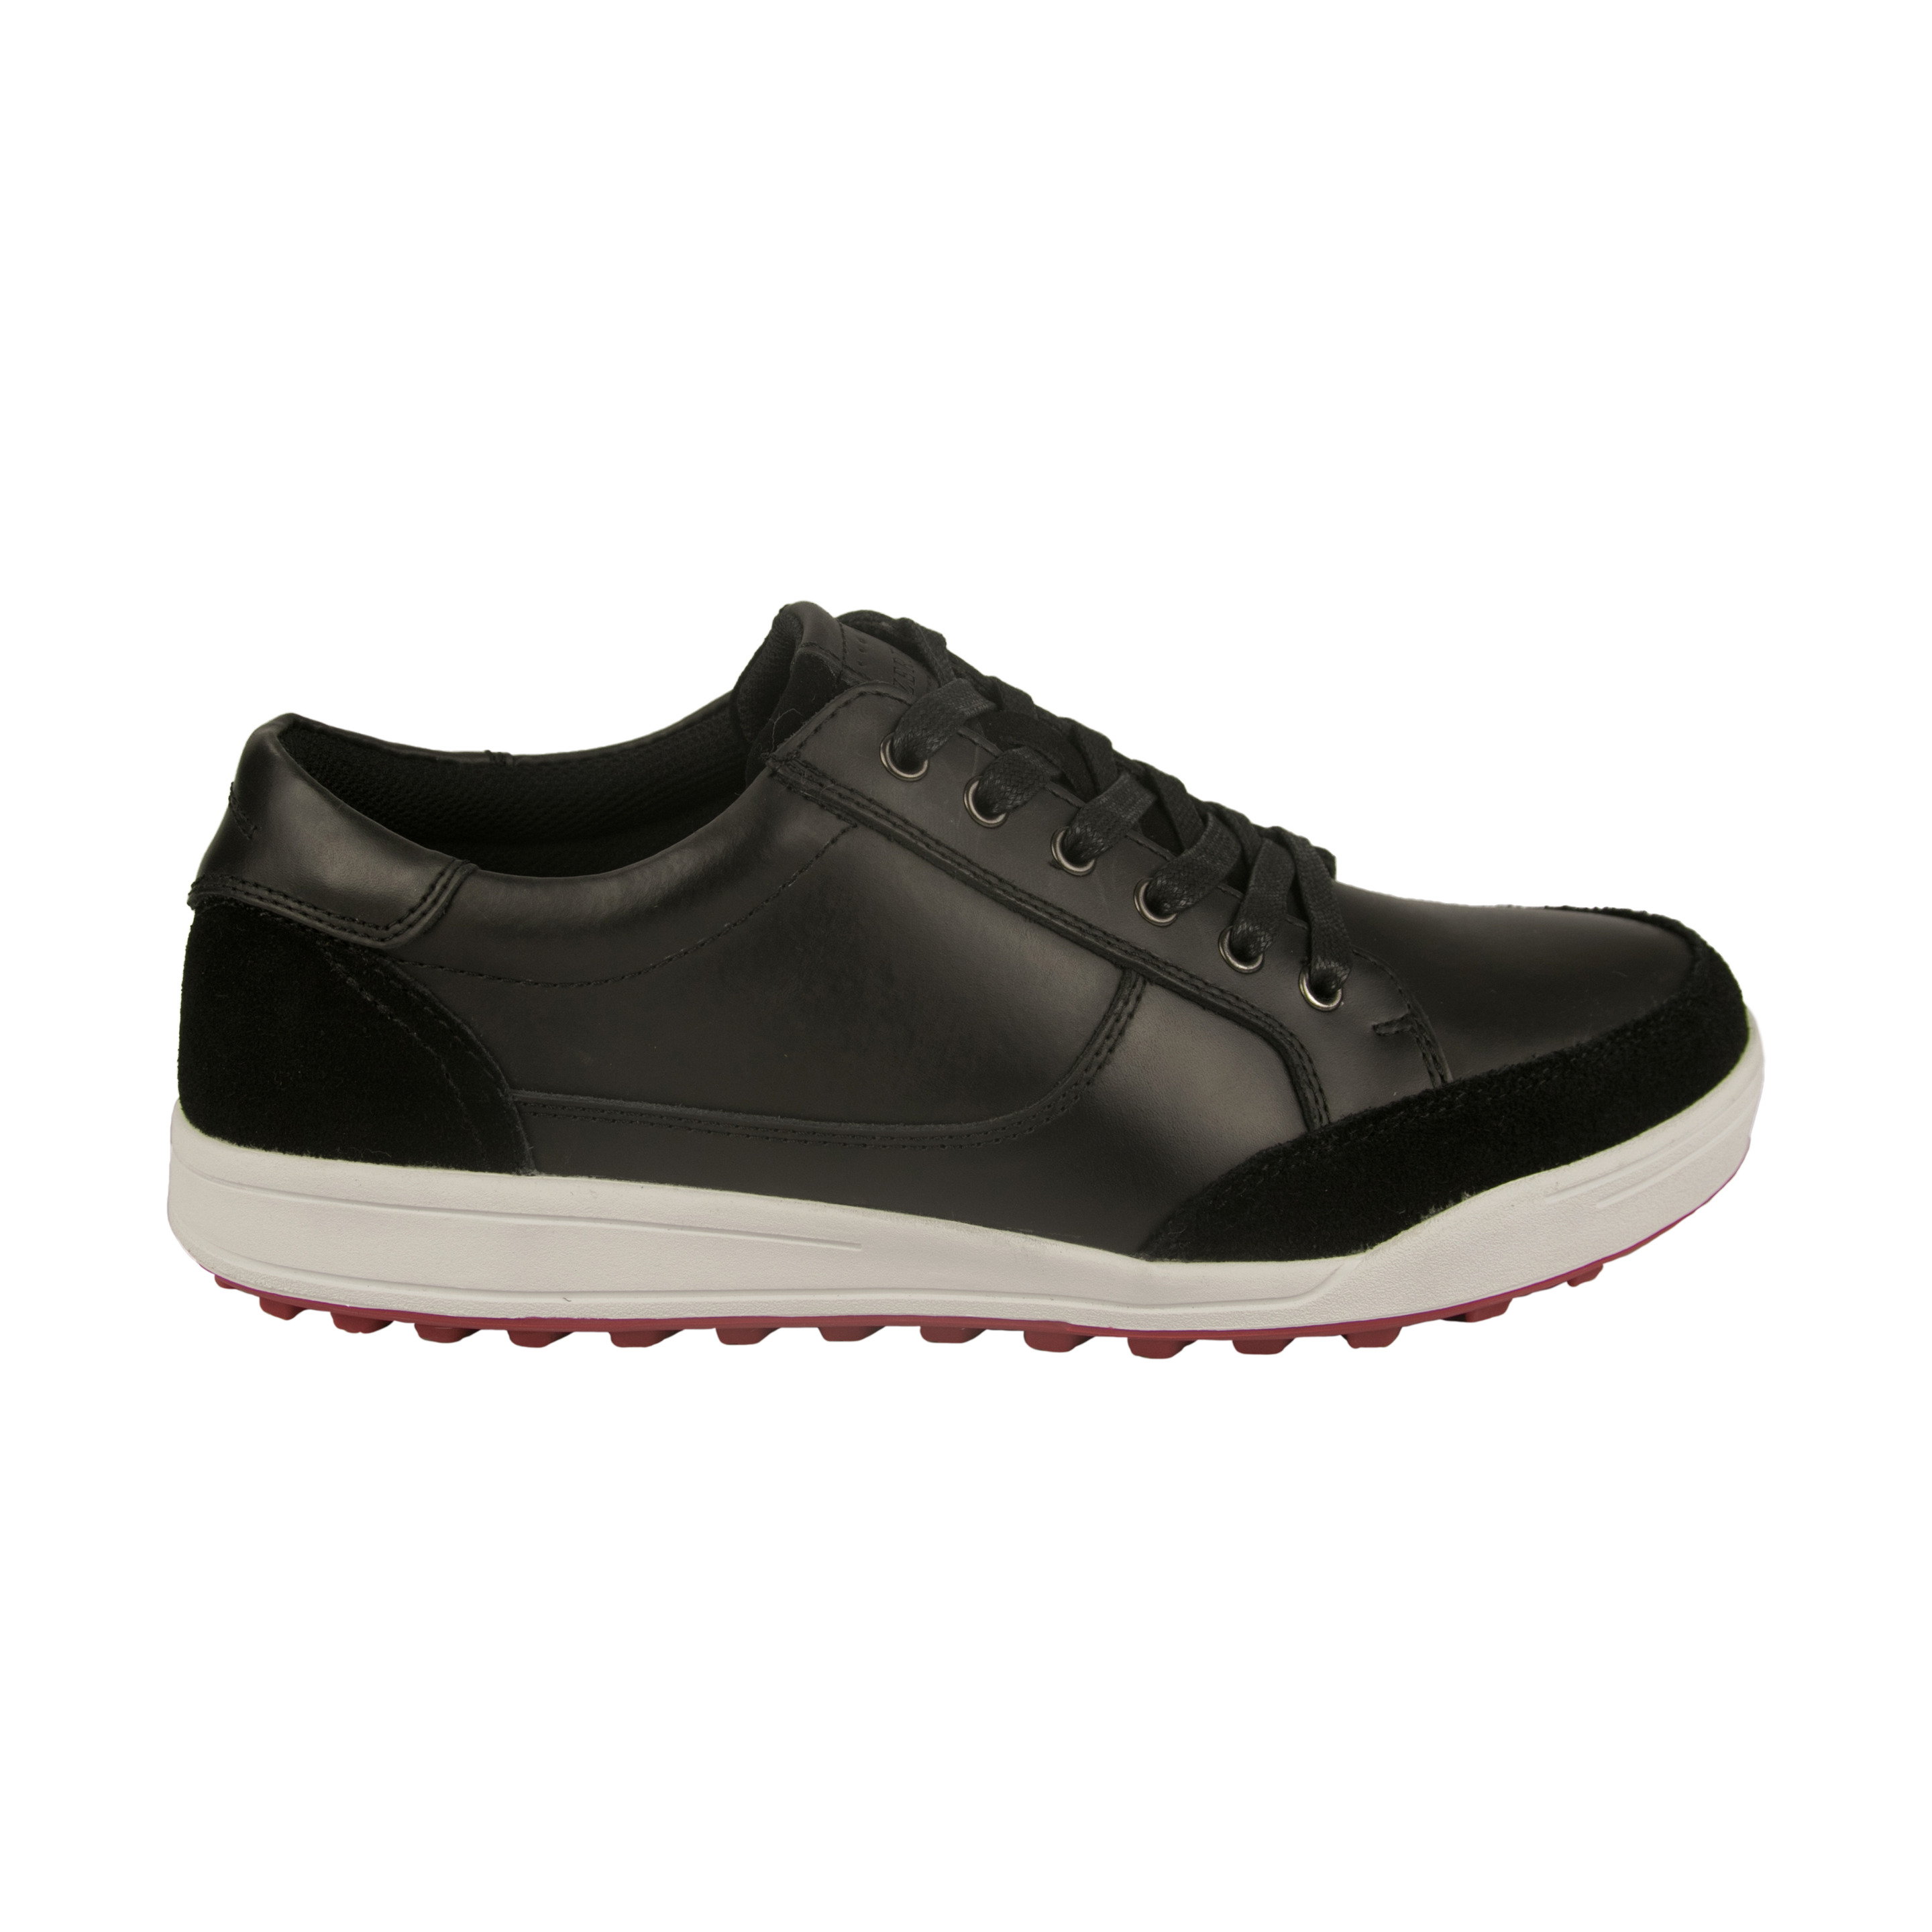 Zerimar Zapatos De Golf Hombre |zapatos Golf Piel | Zapatos Hombre Deportivos | Zapatillas De Golf - negro - 